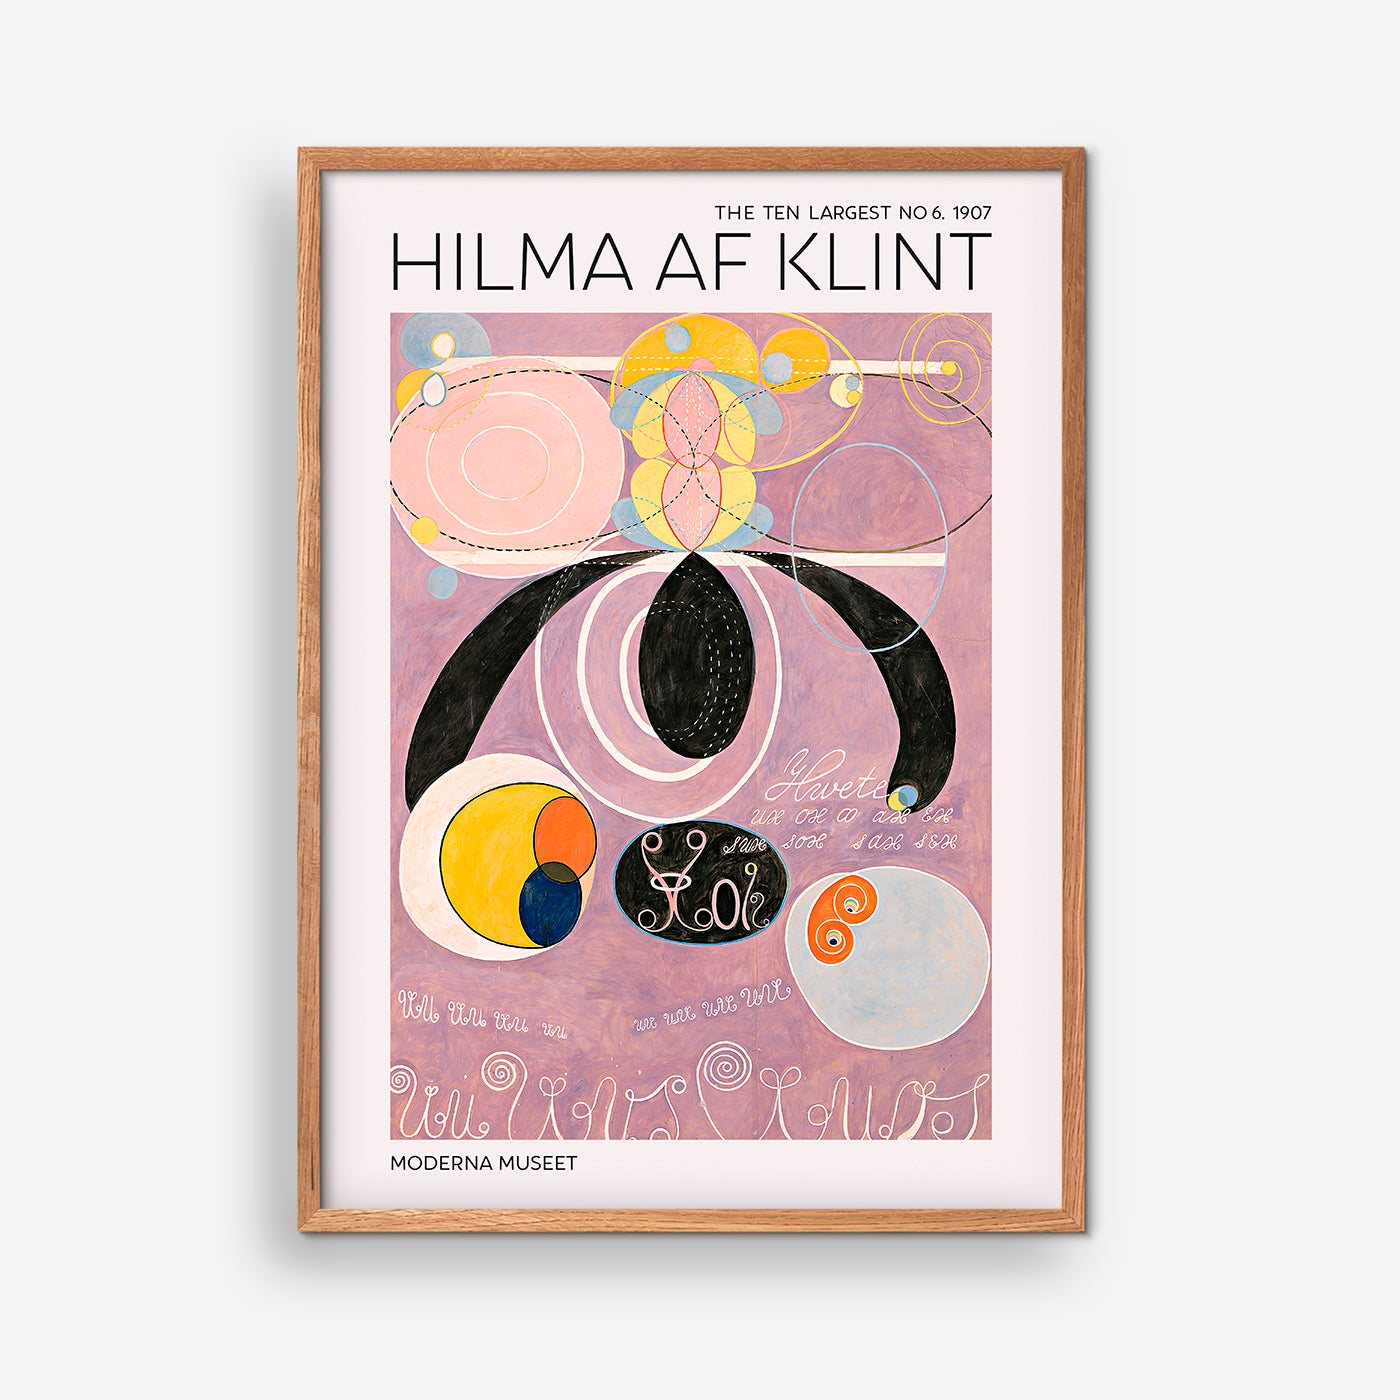 The Ten Largest No. 6 - Hilma Of Klint